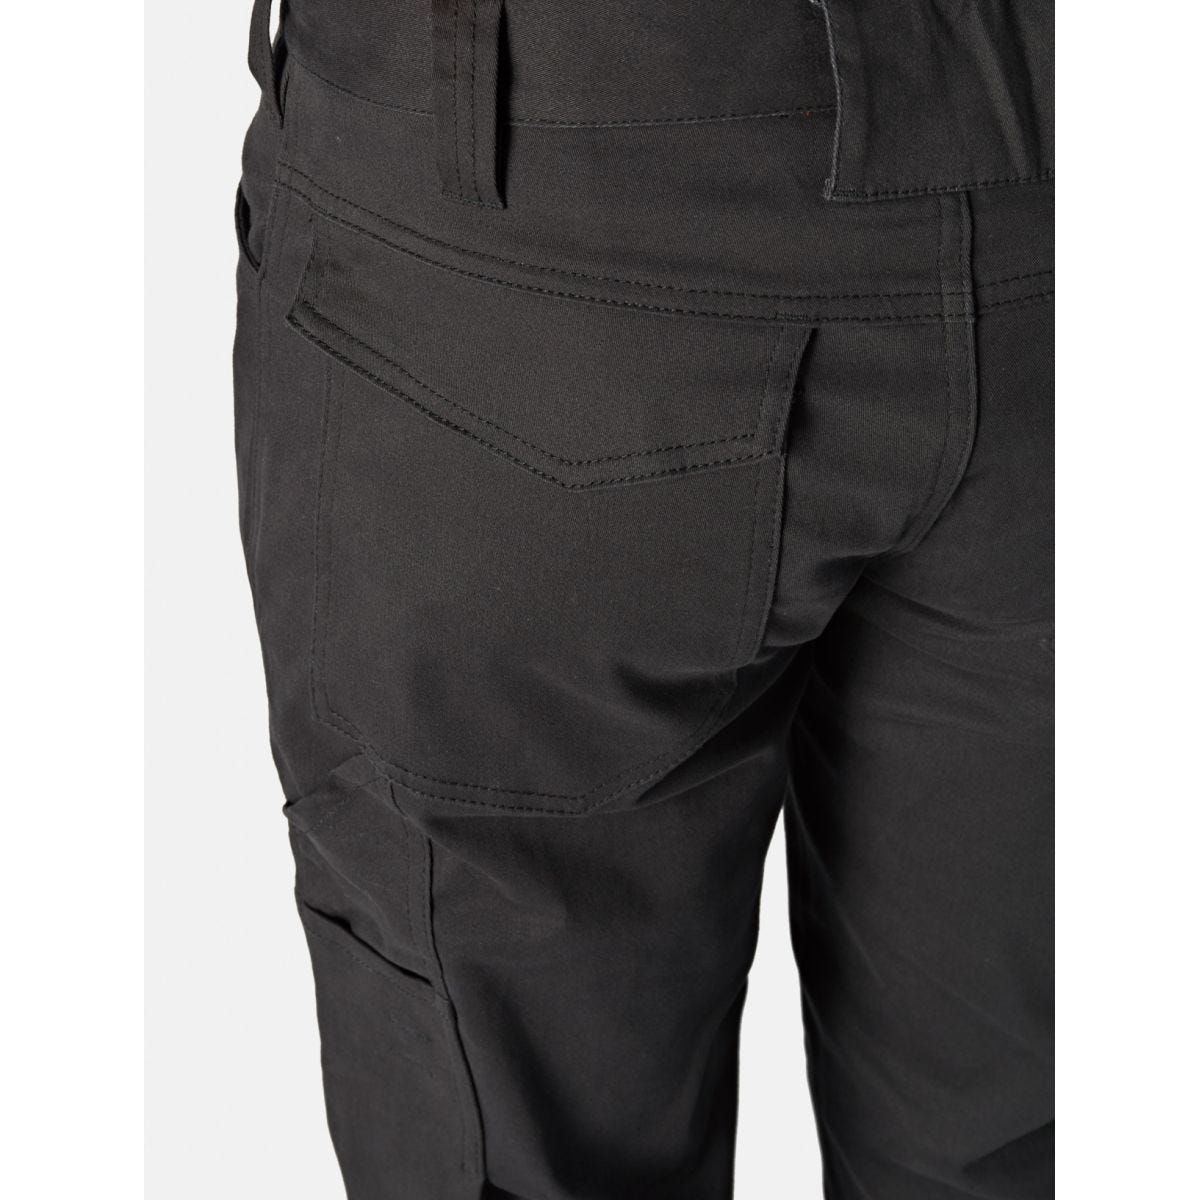 Pantalon Lead In Flex Noir - Dickies - Taille 48 2